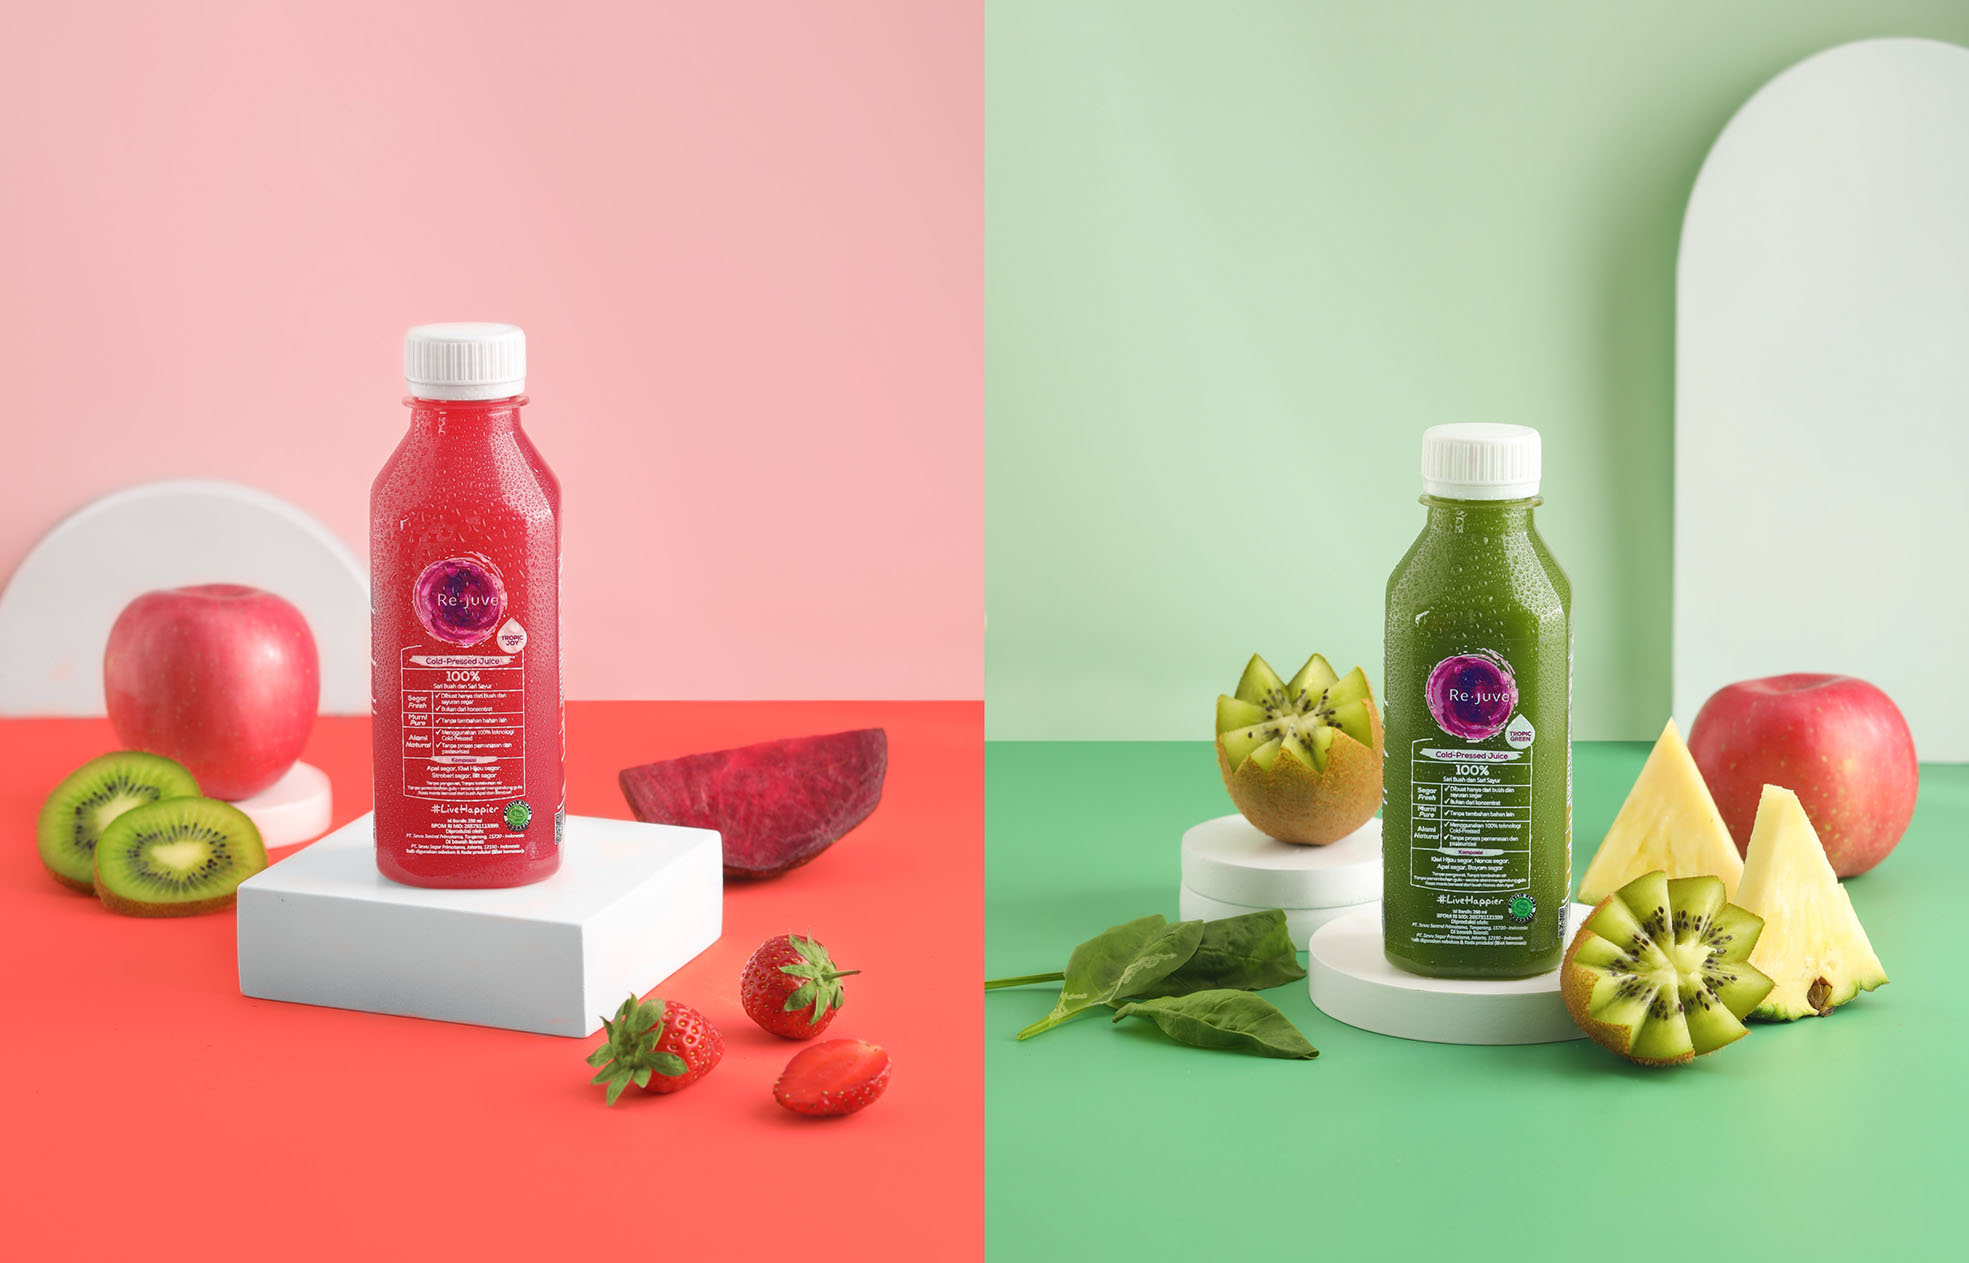 Re.juve Luncurkan Produk Terbaru,True Cold-Pressed Juice Kiwi Line yang Tinggi Vitamin C dan Antioksidan Alami